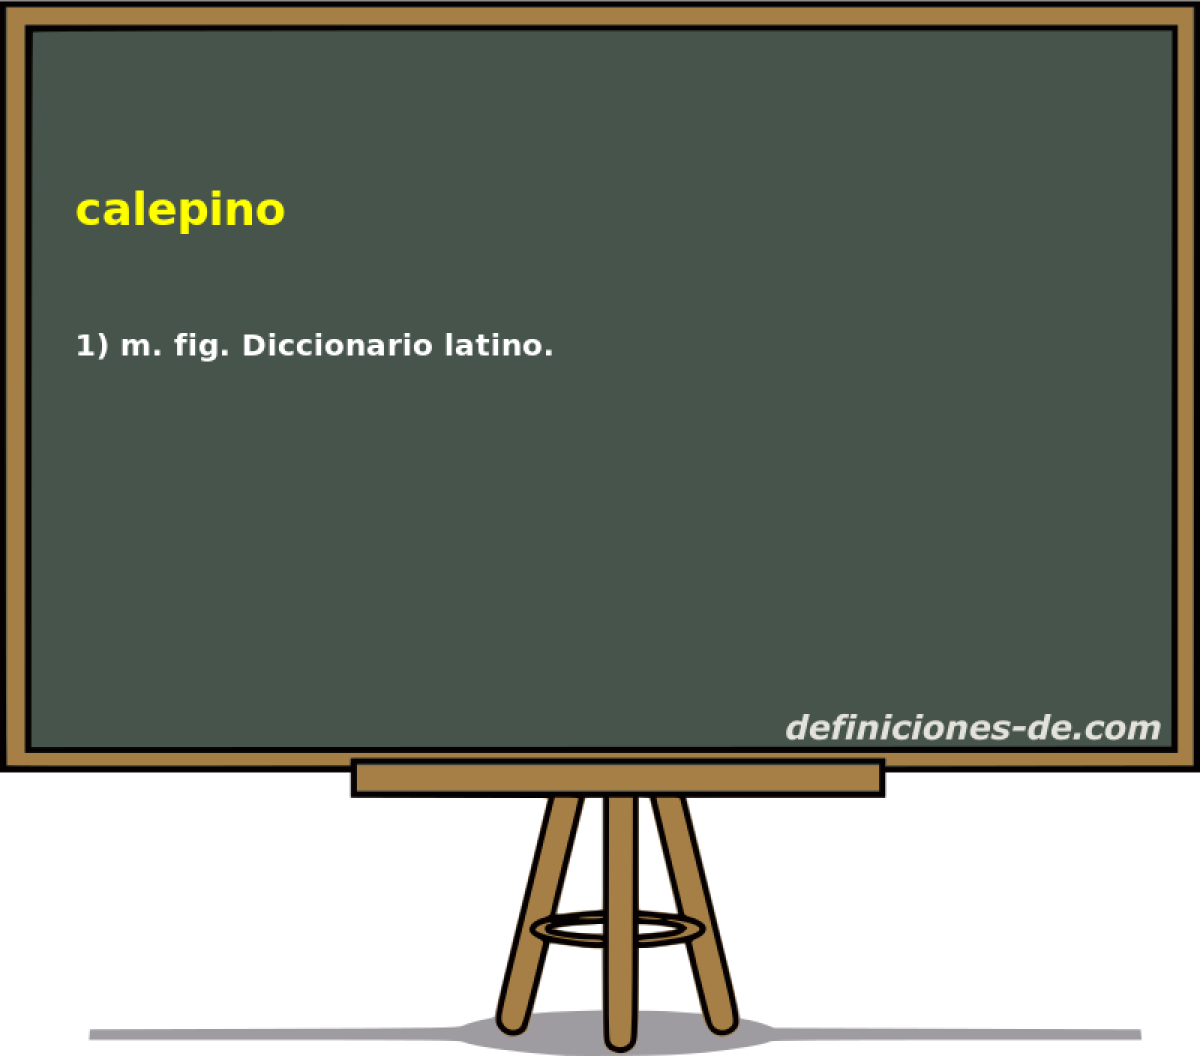 calepino 